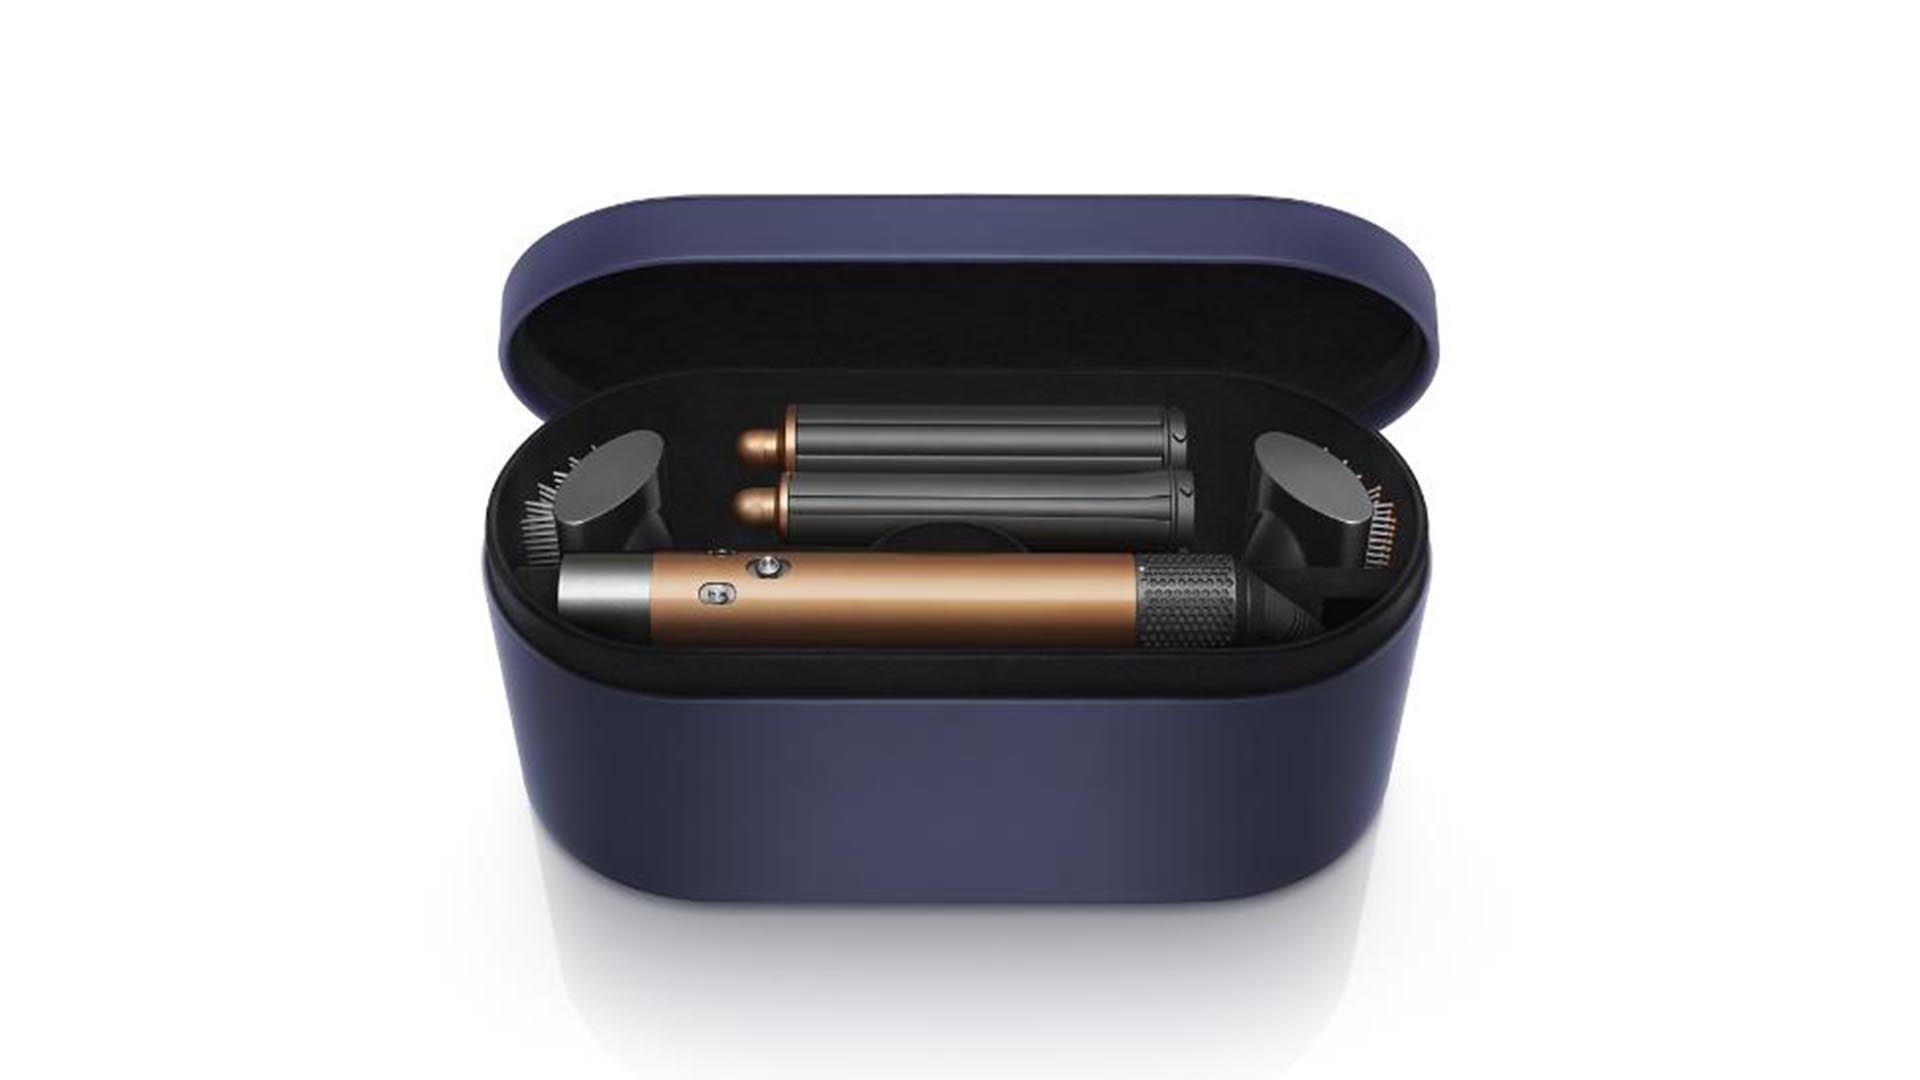 Dyson airwrap multi-styler in purple case.